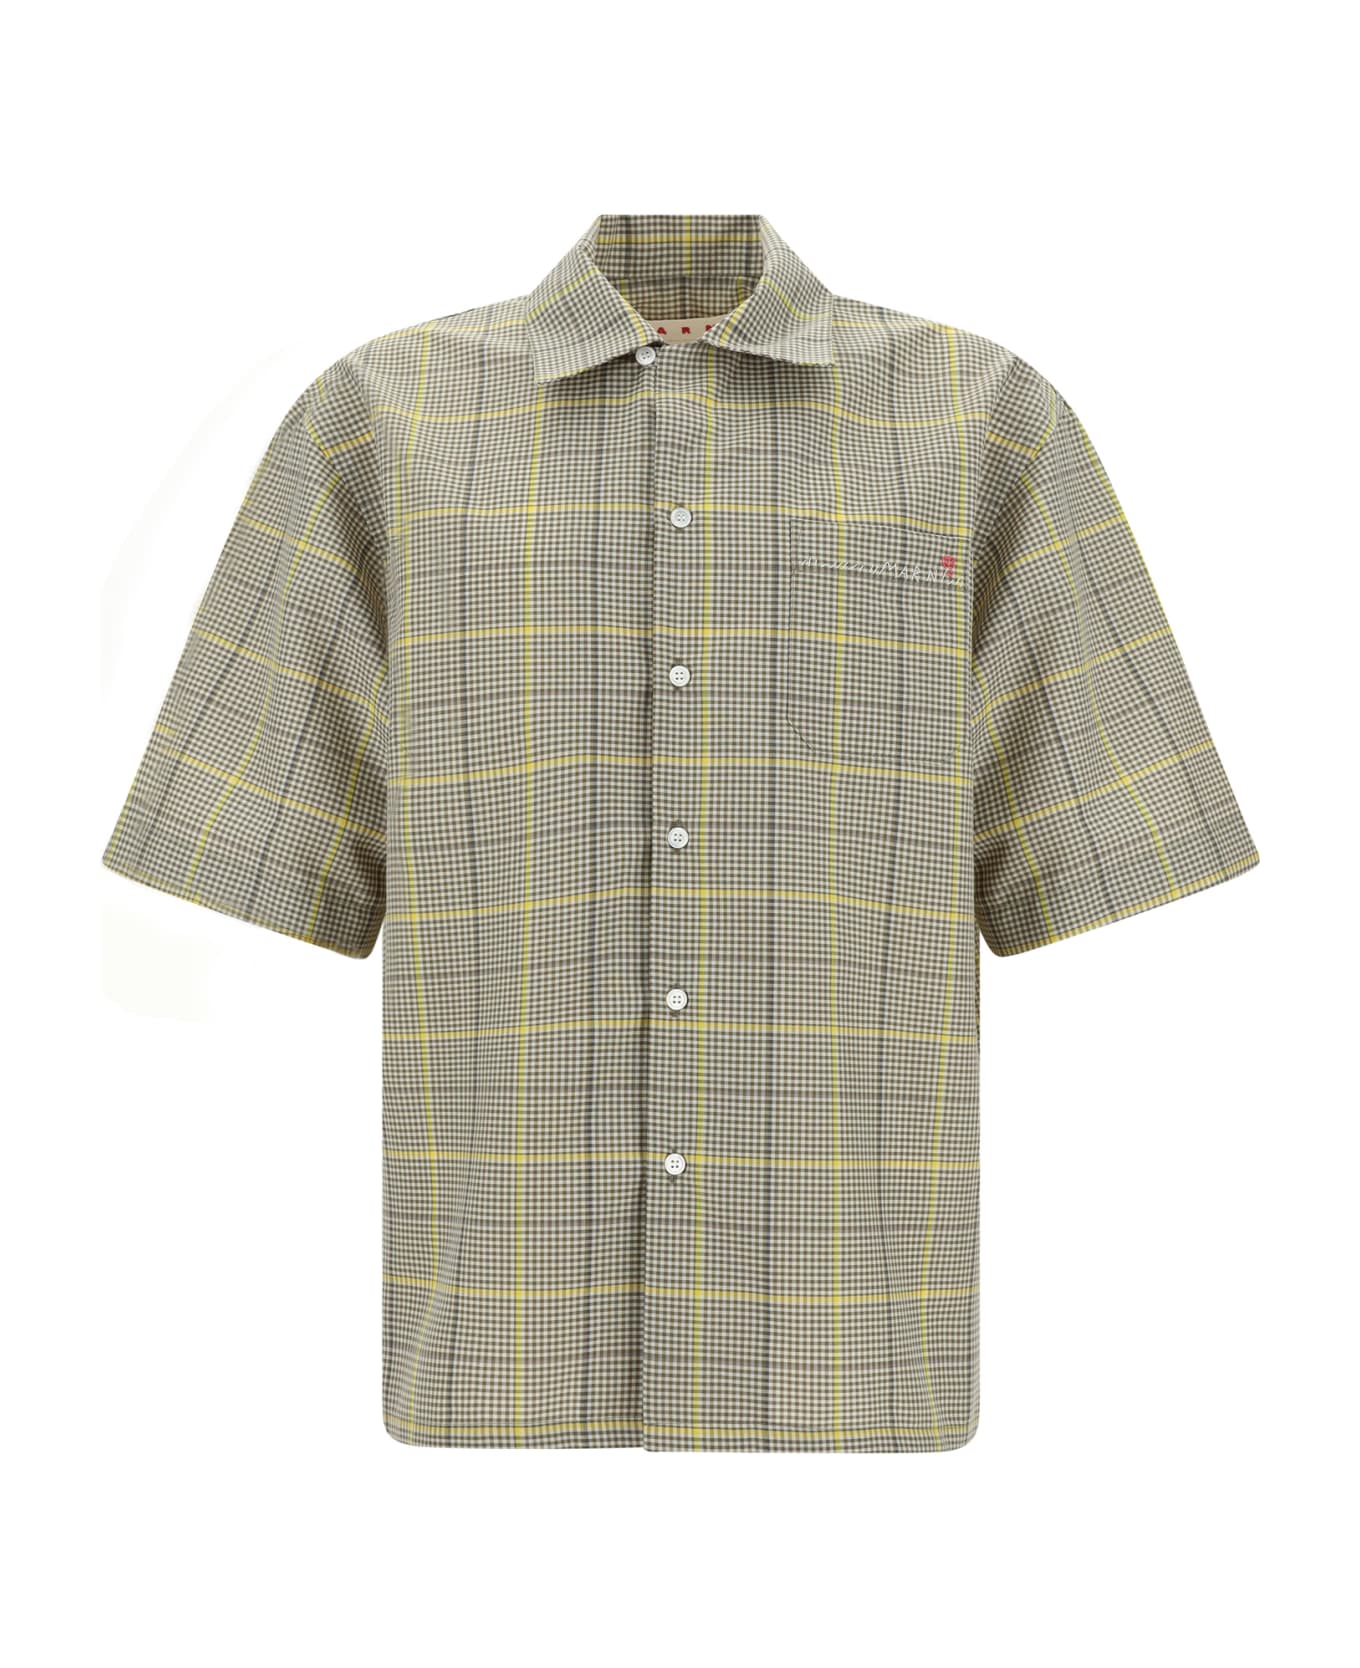 Marni Shirt - India Yellow シャツ